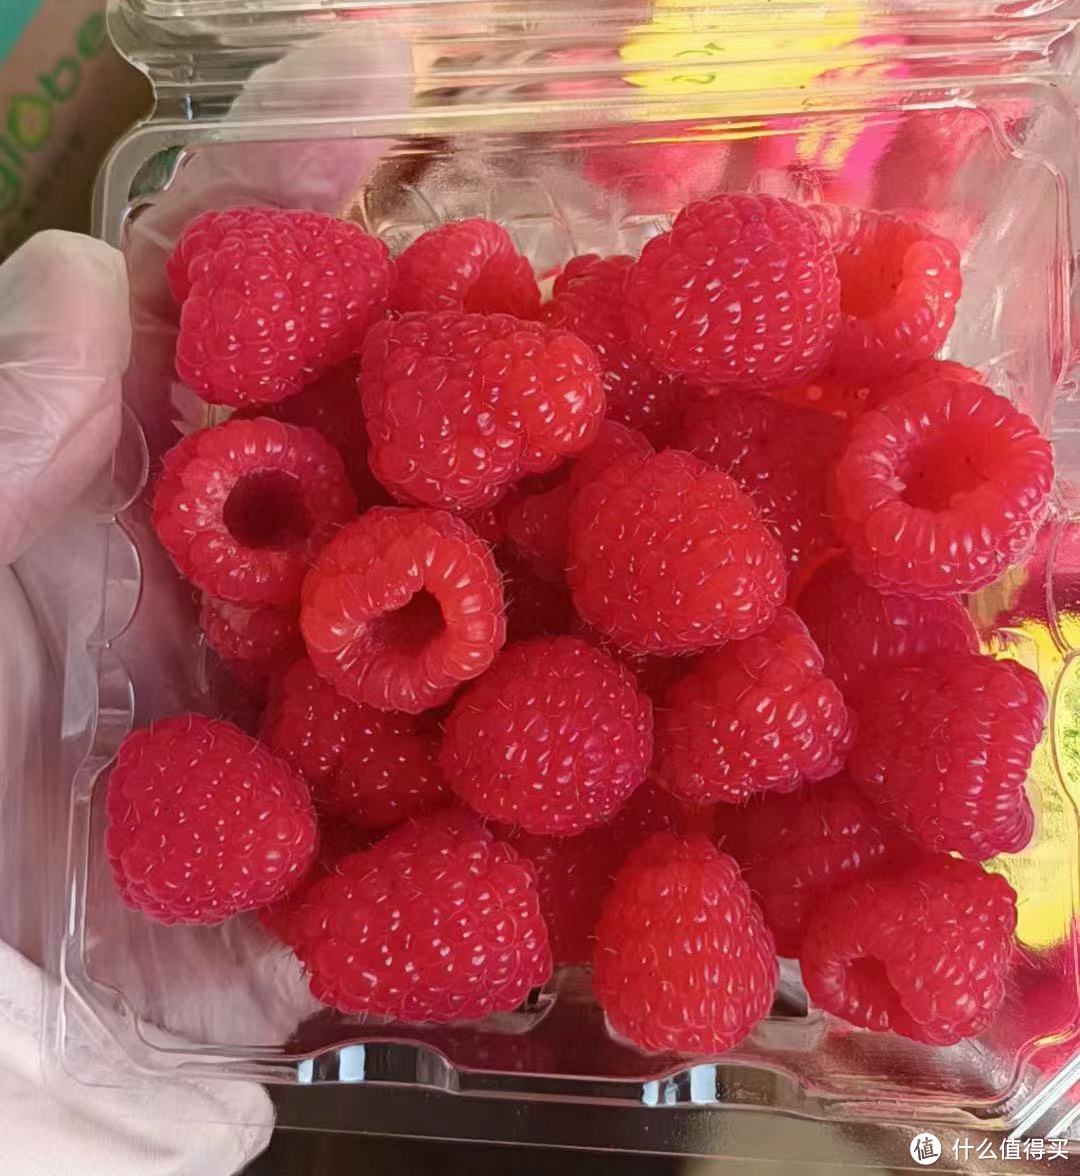 舌尖上的美味~颗颗饱满多汁的怡颗莓树莓